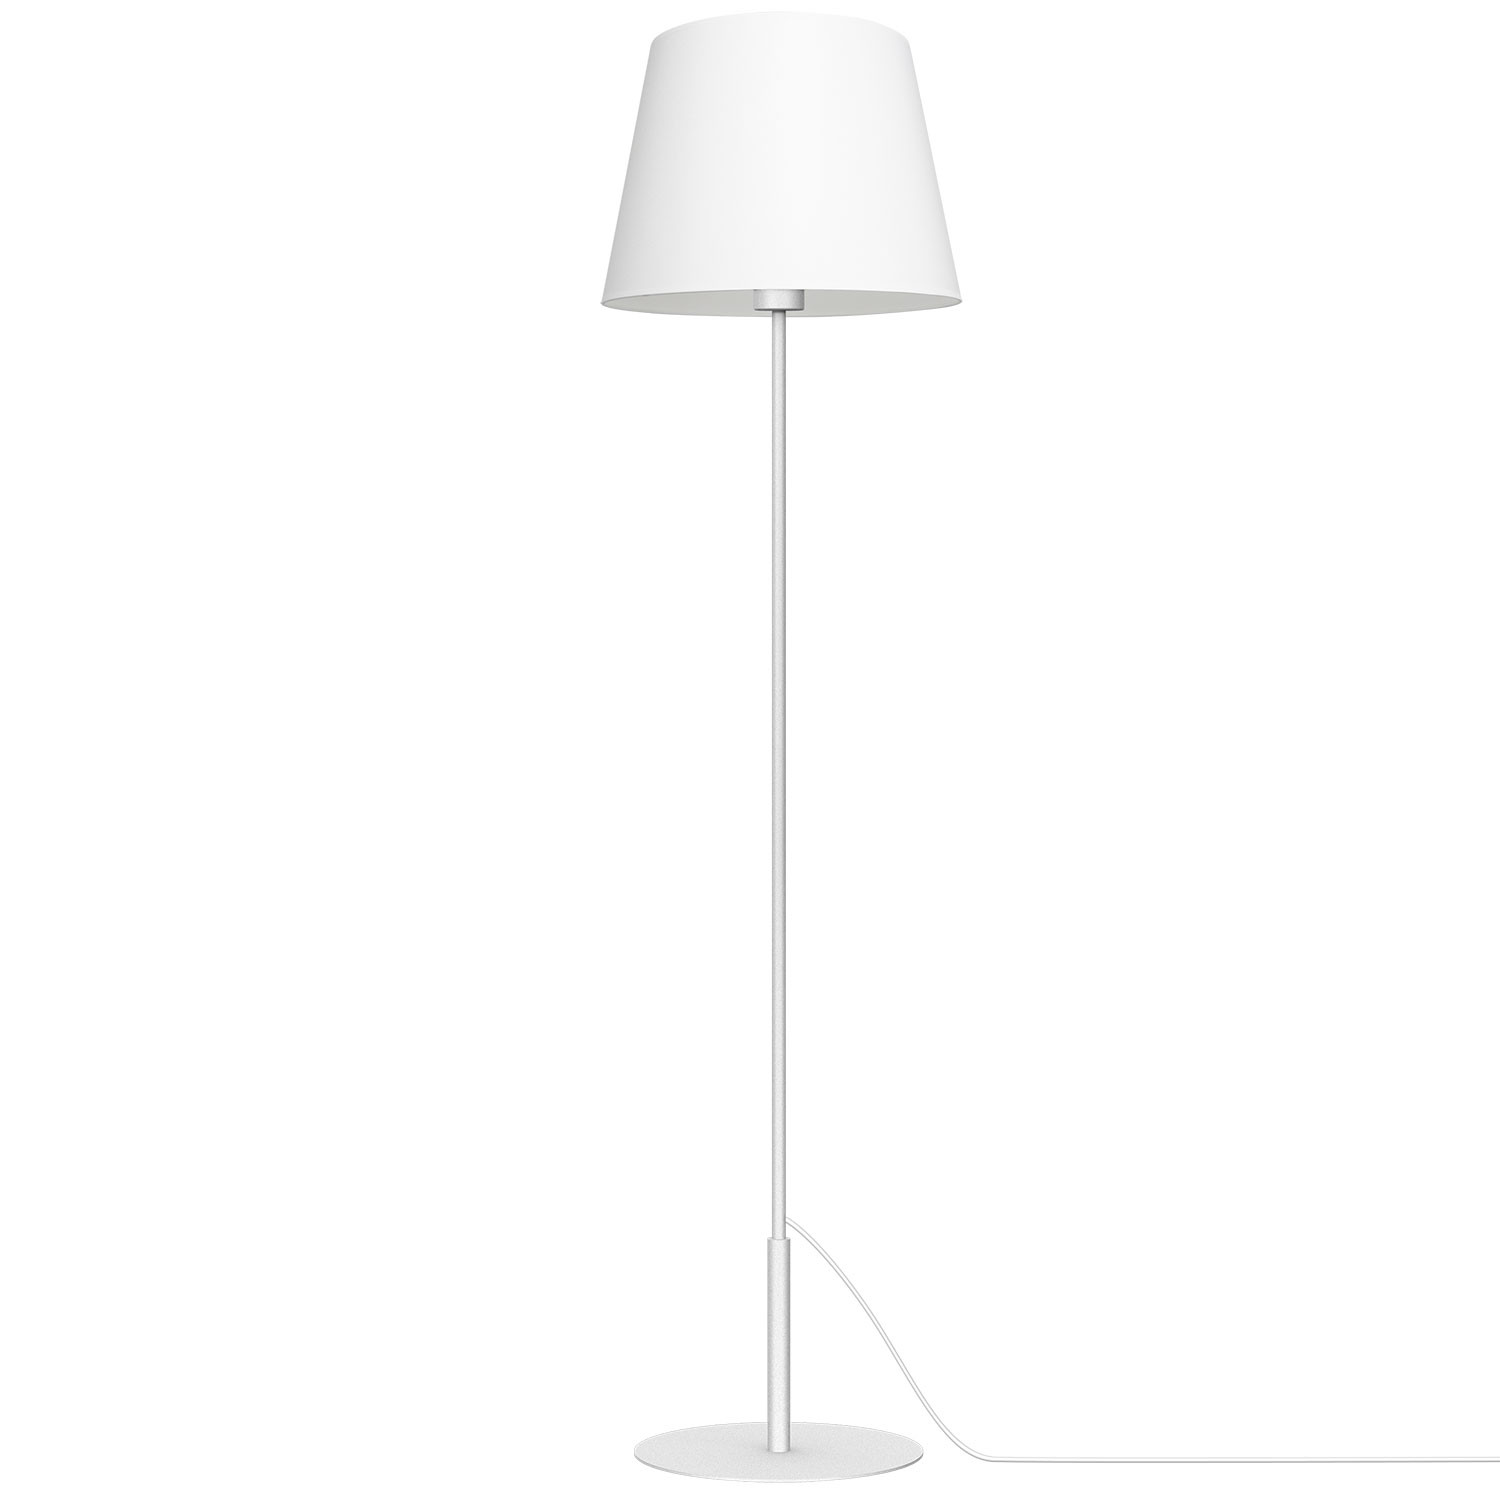 Luminex Arden 3440 Lampa stojąca Lampa 1x60W E27 biały